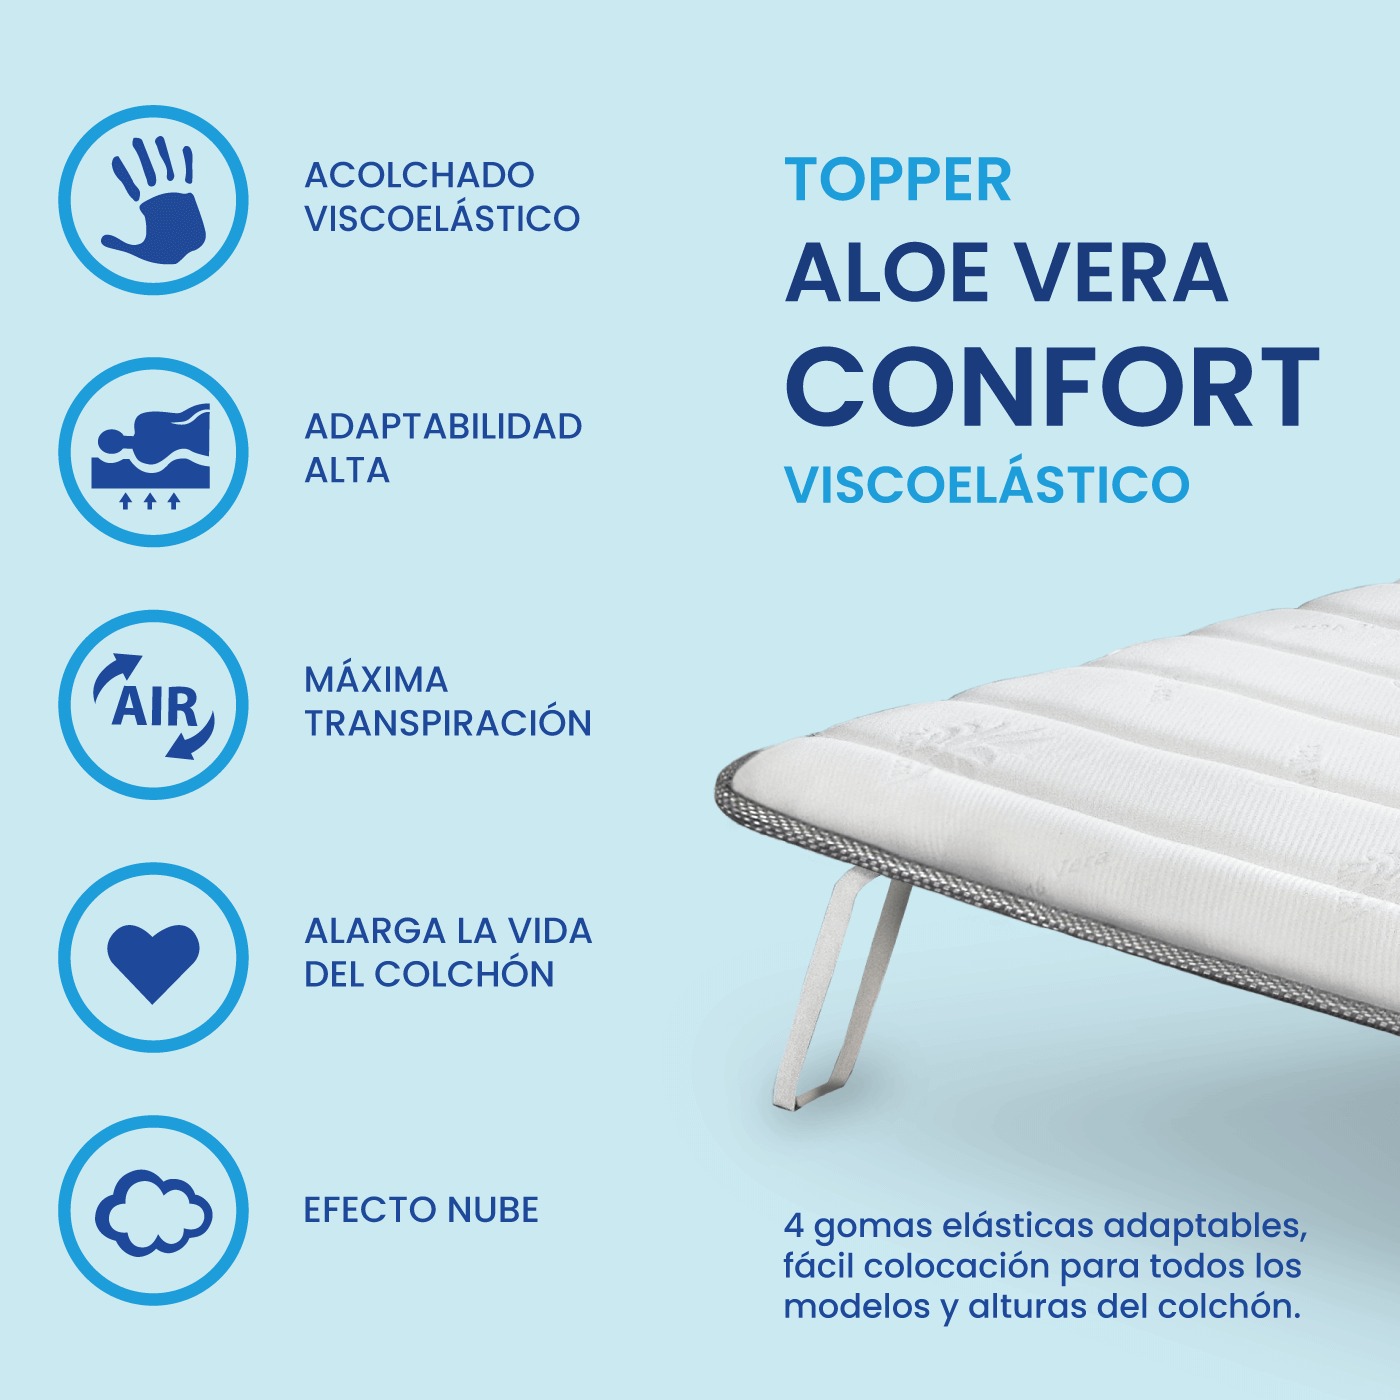 Topper sobre colchón Aloe Vera Confort, Visco